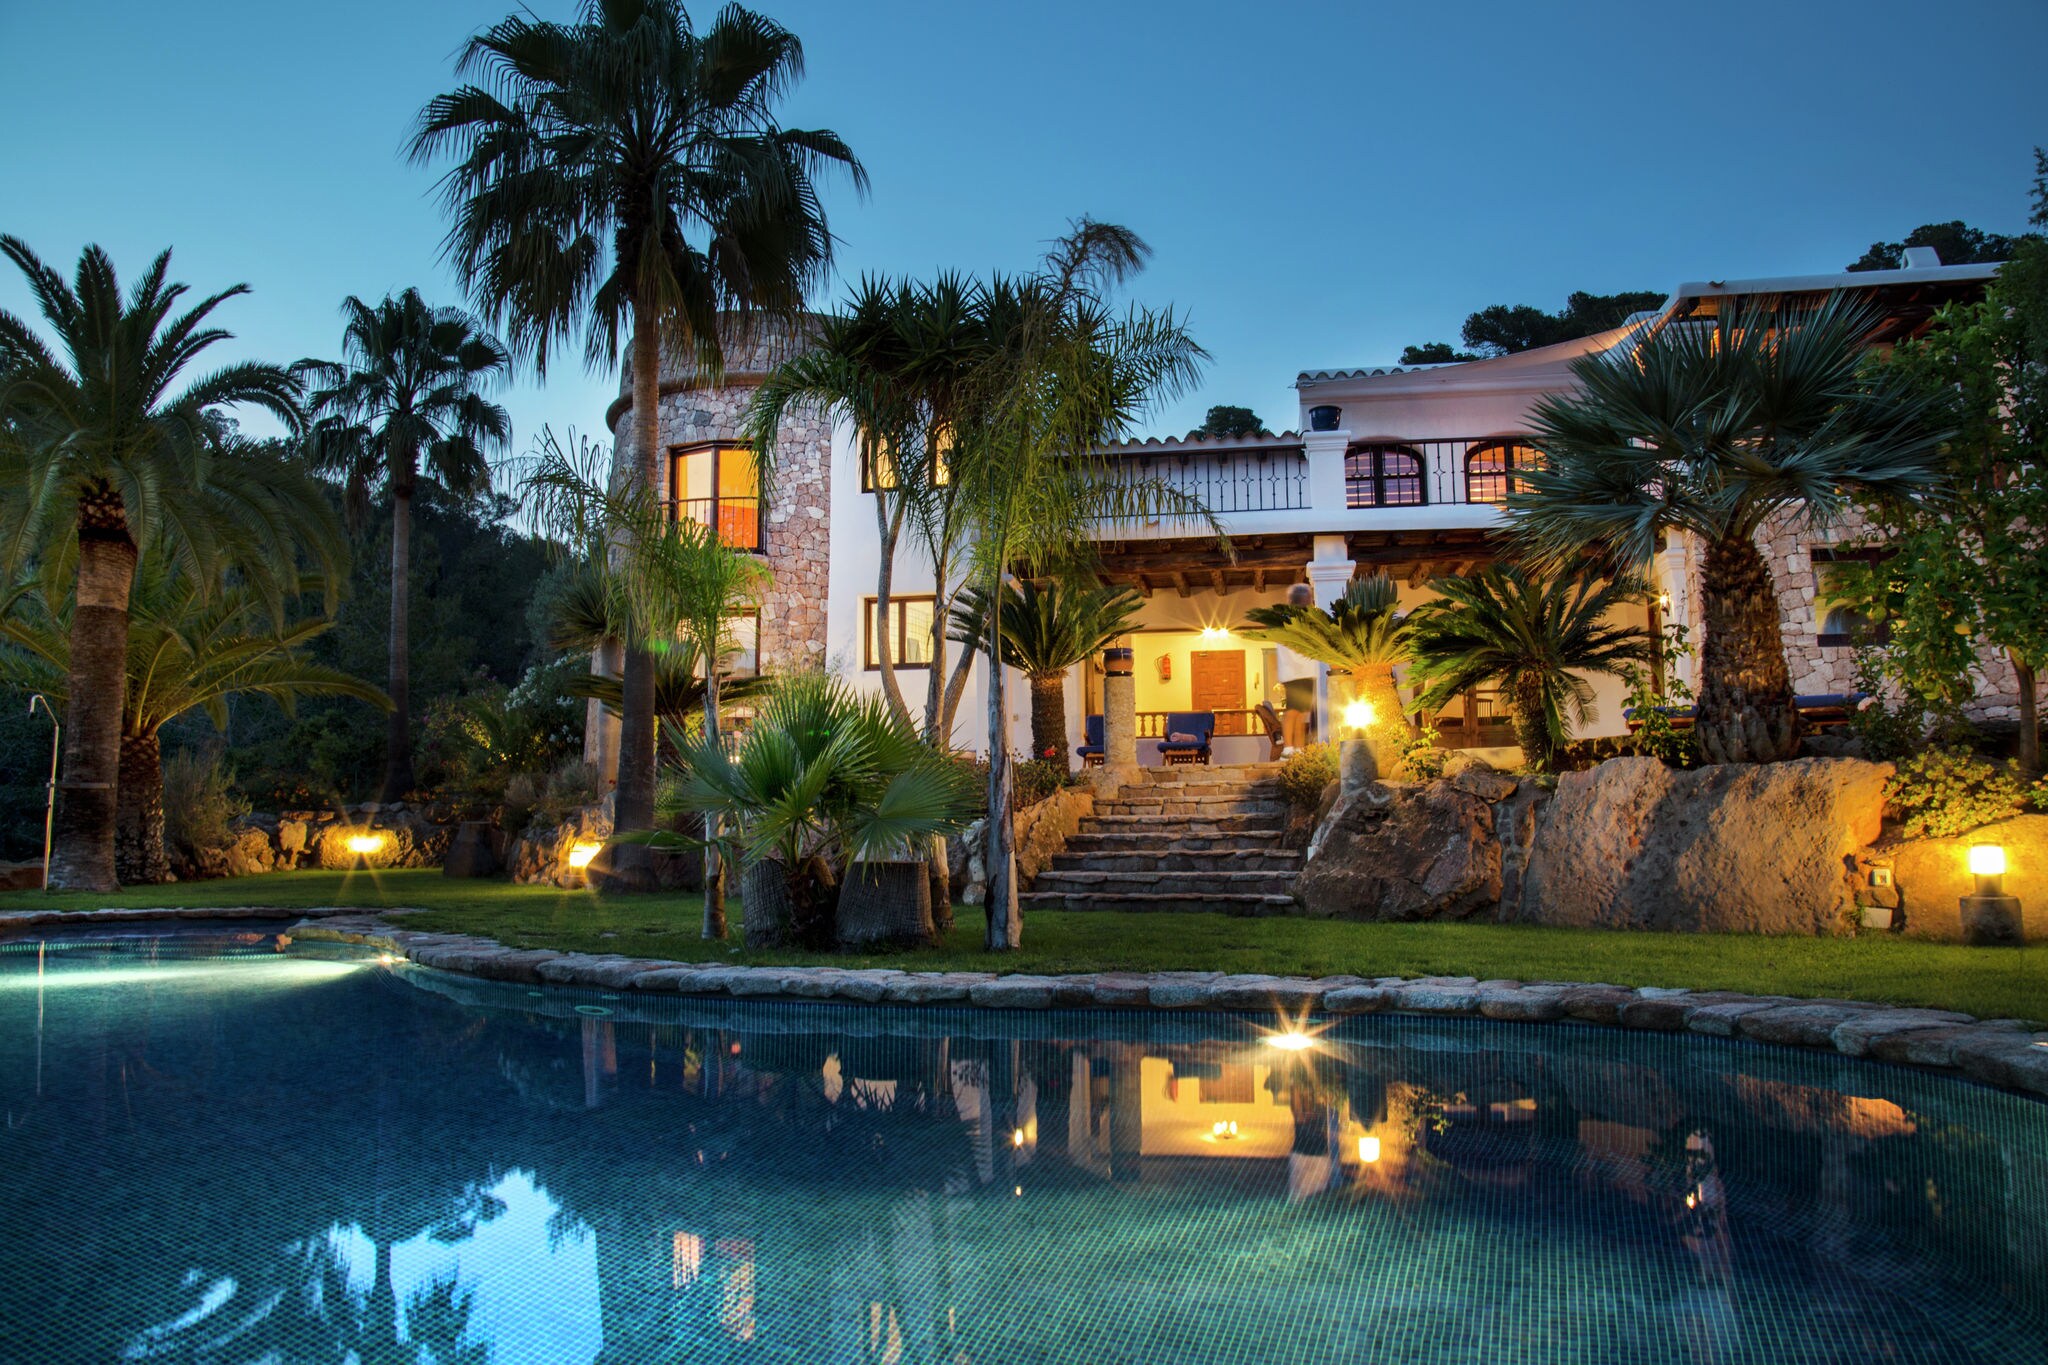 Luxe, rustig gelegen villa met zwembad en mooi uitzicht.